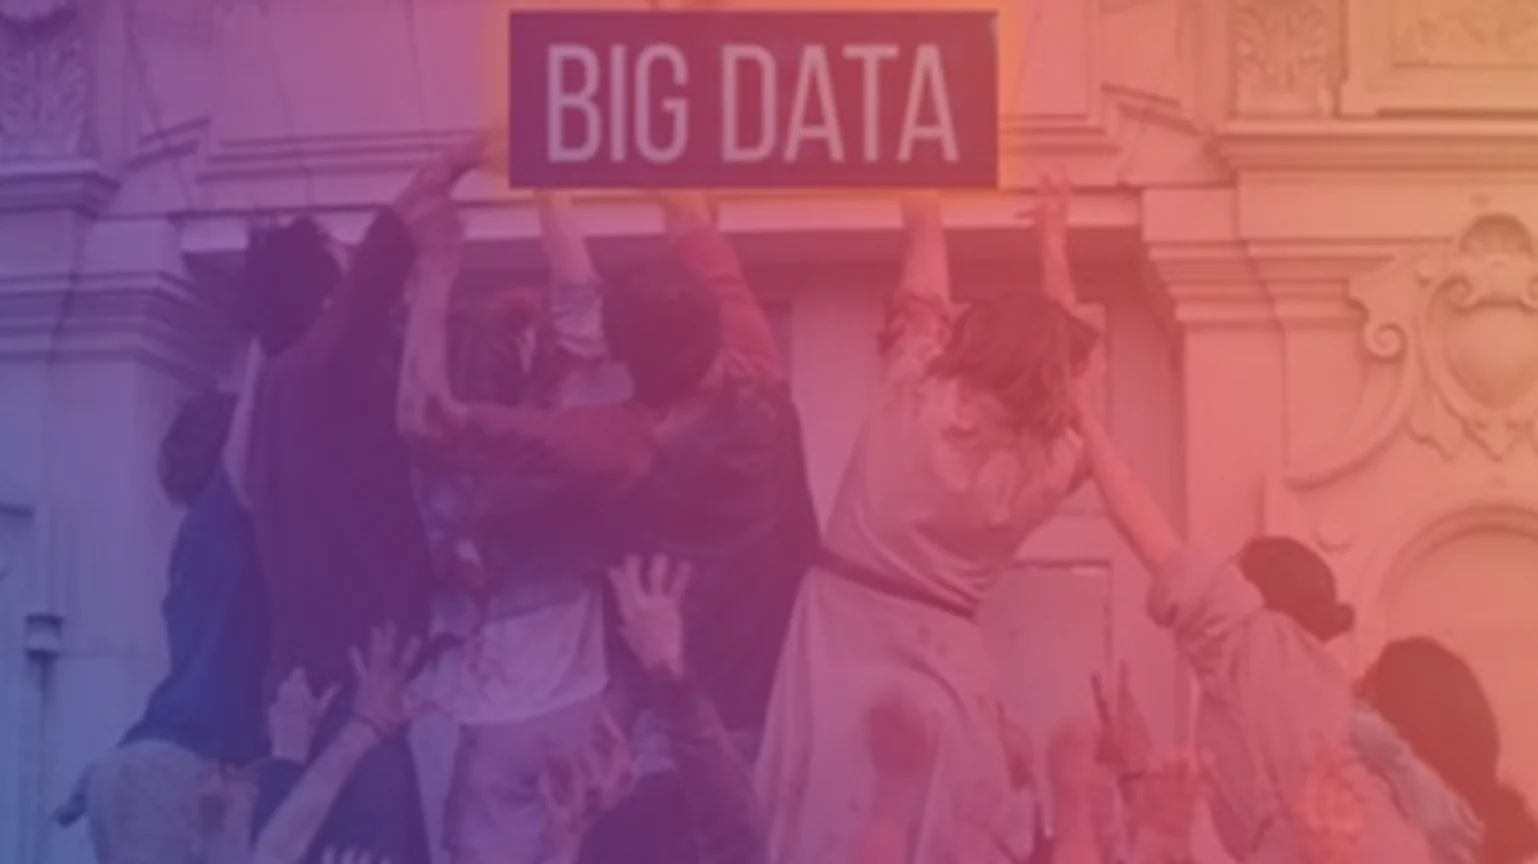 La course à la Big Data